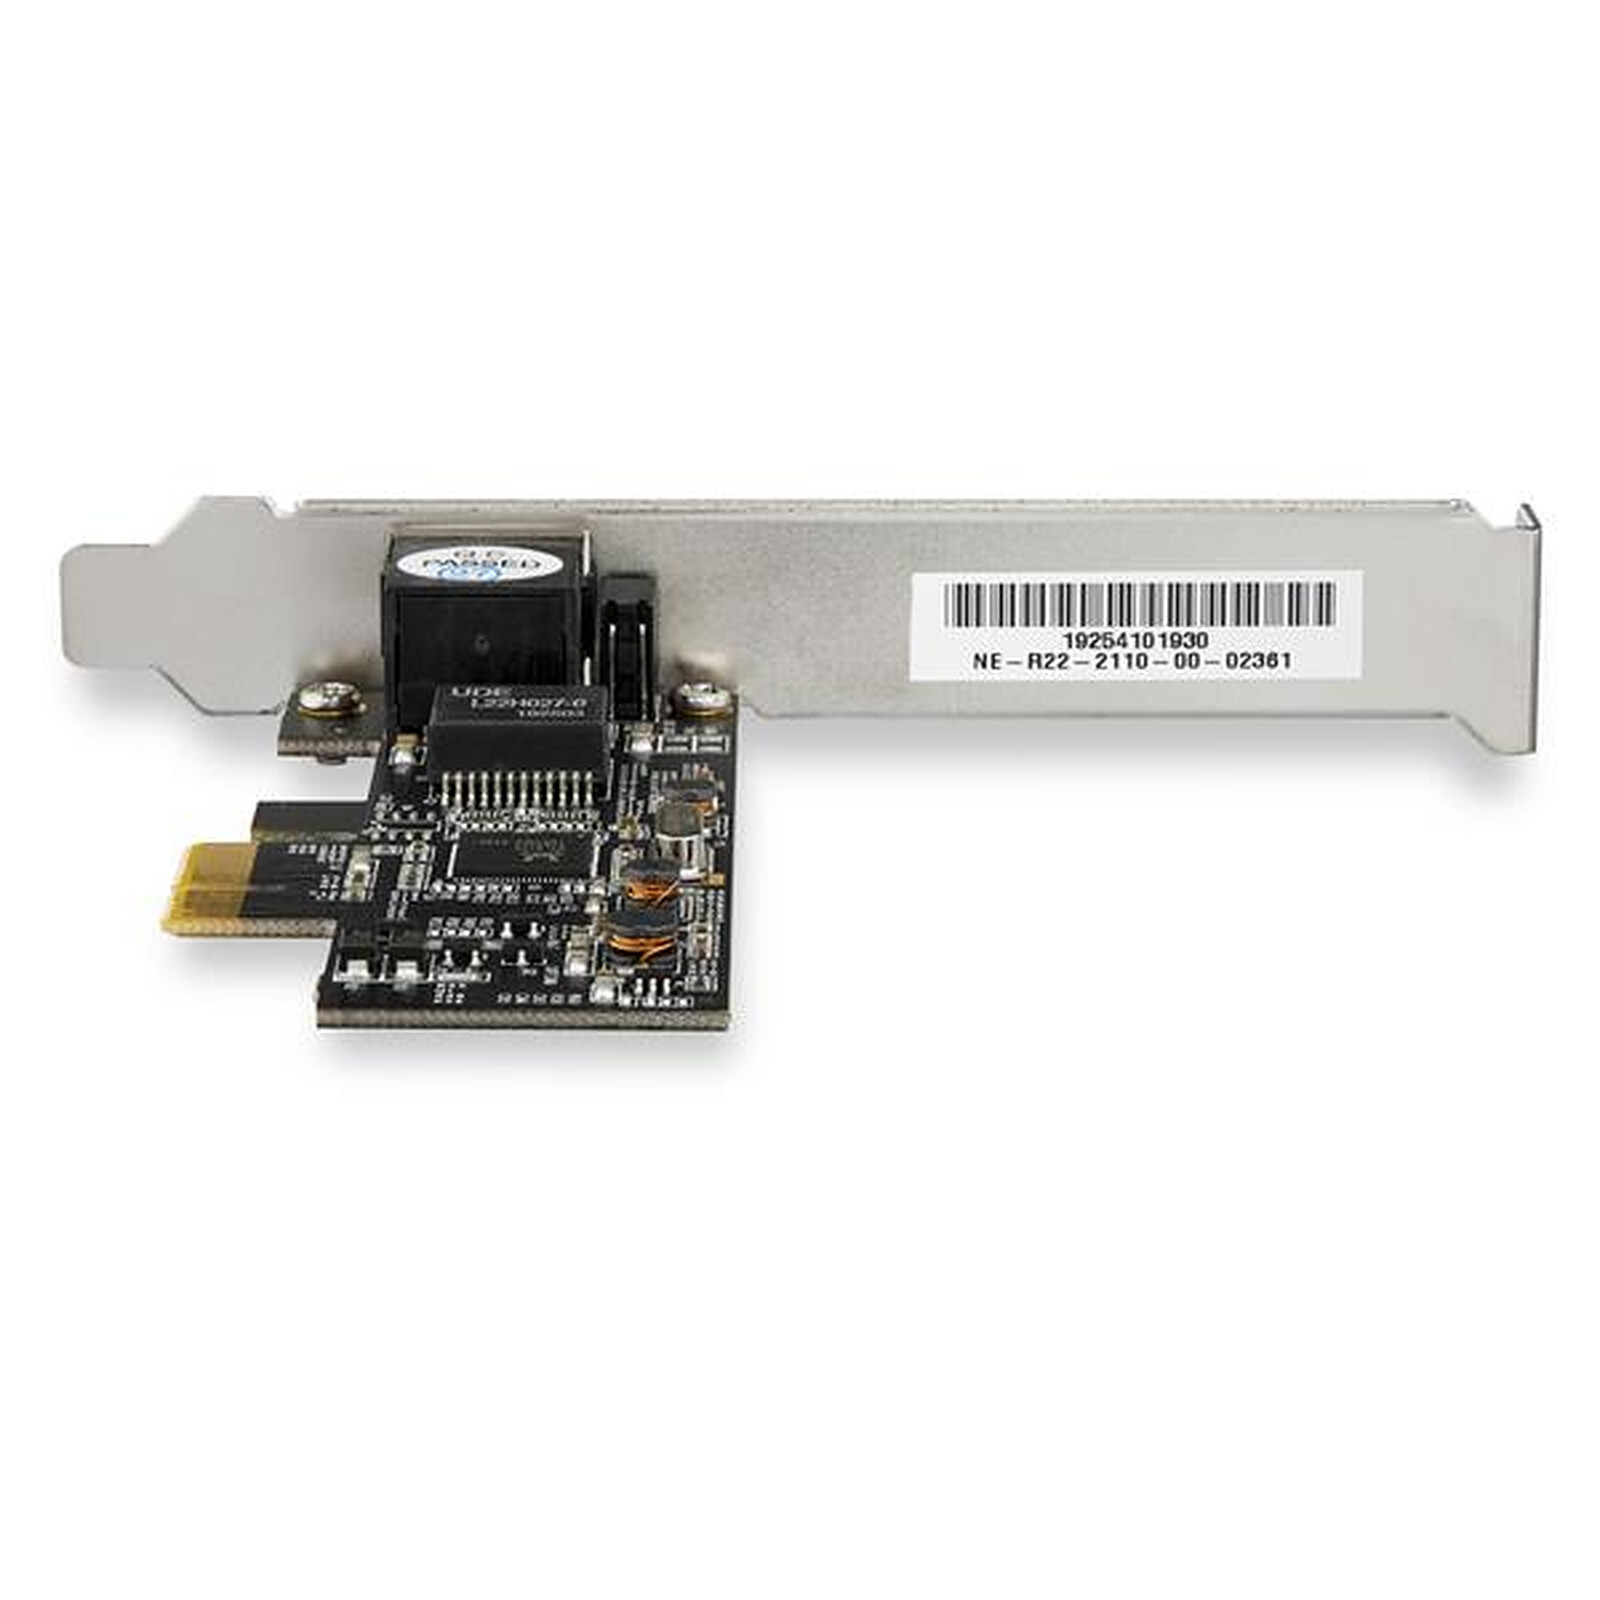 Startech : CARTE RESEAU PCI EXPRESS A 1 PORT 10 GBE avec INTEL X550